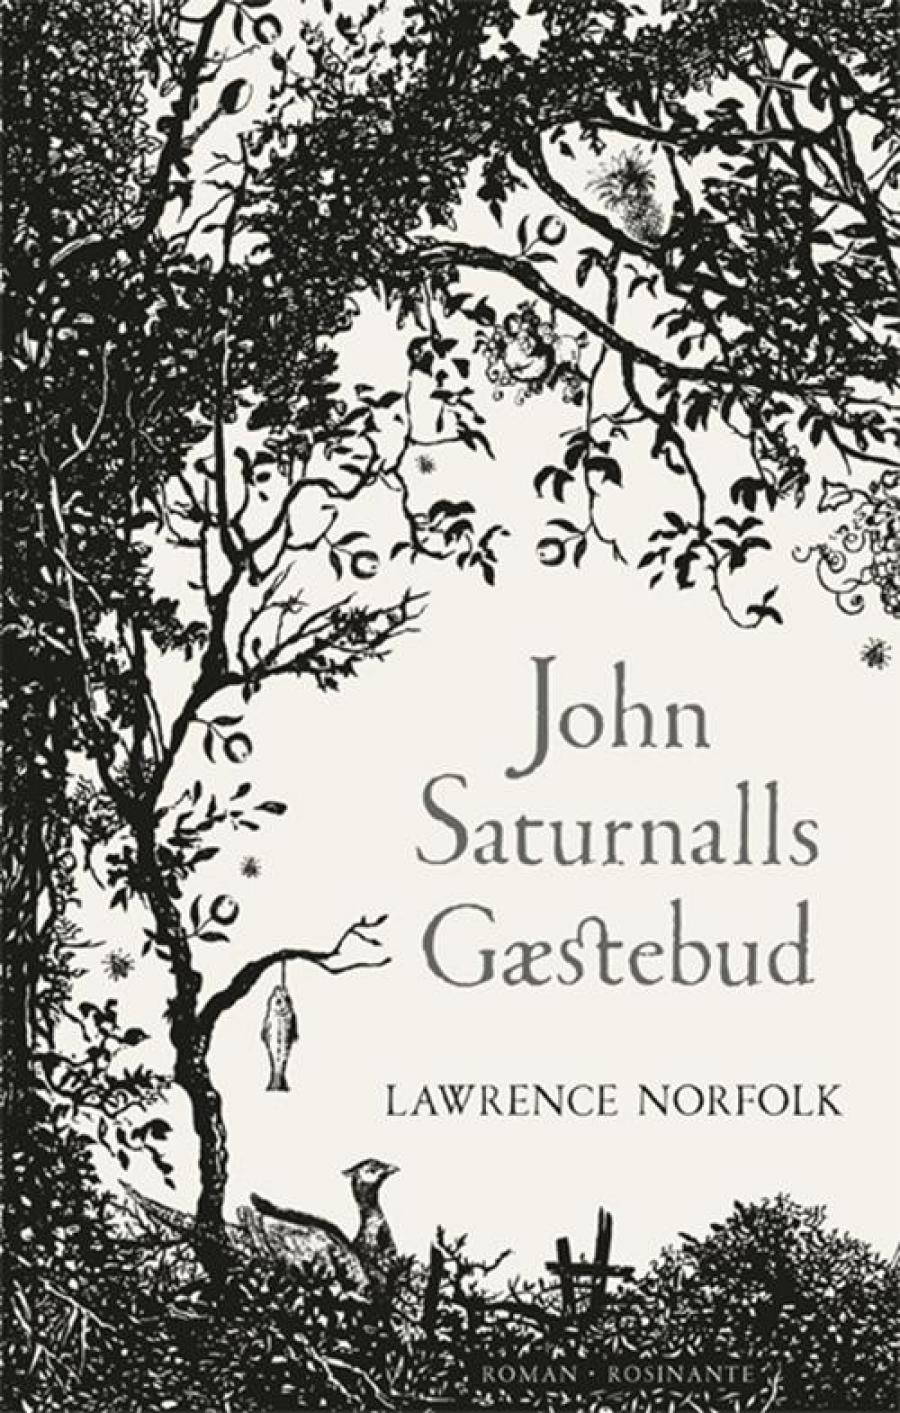 John Saturnalls gæstebud af Lawrence Norfolk